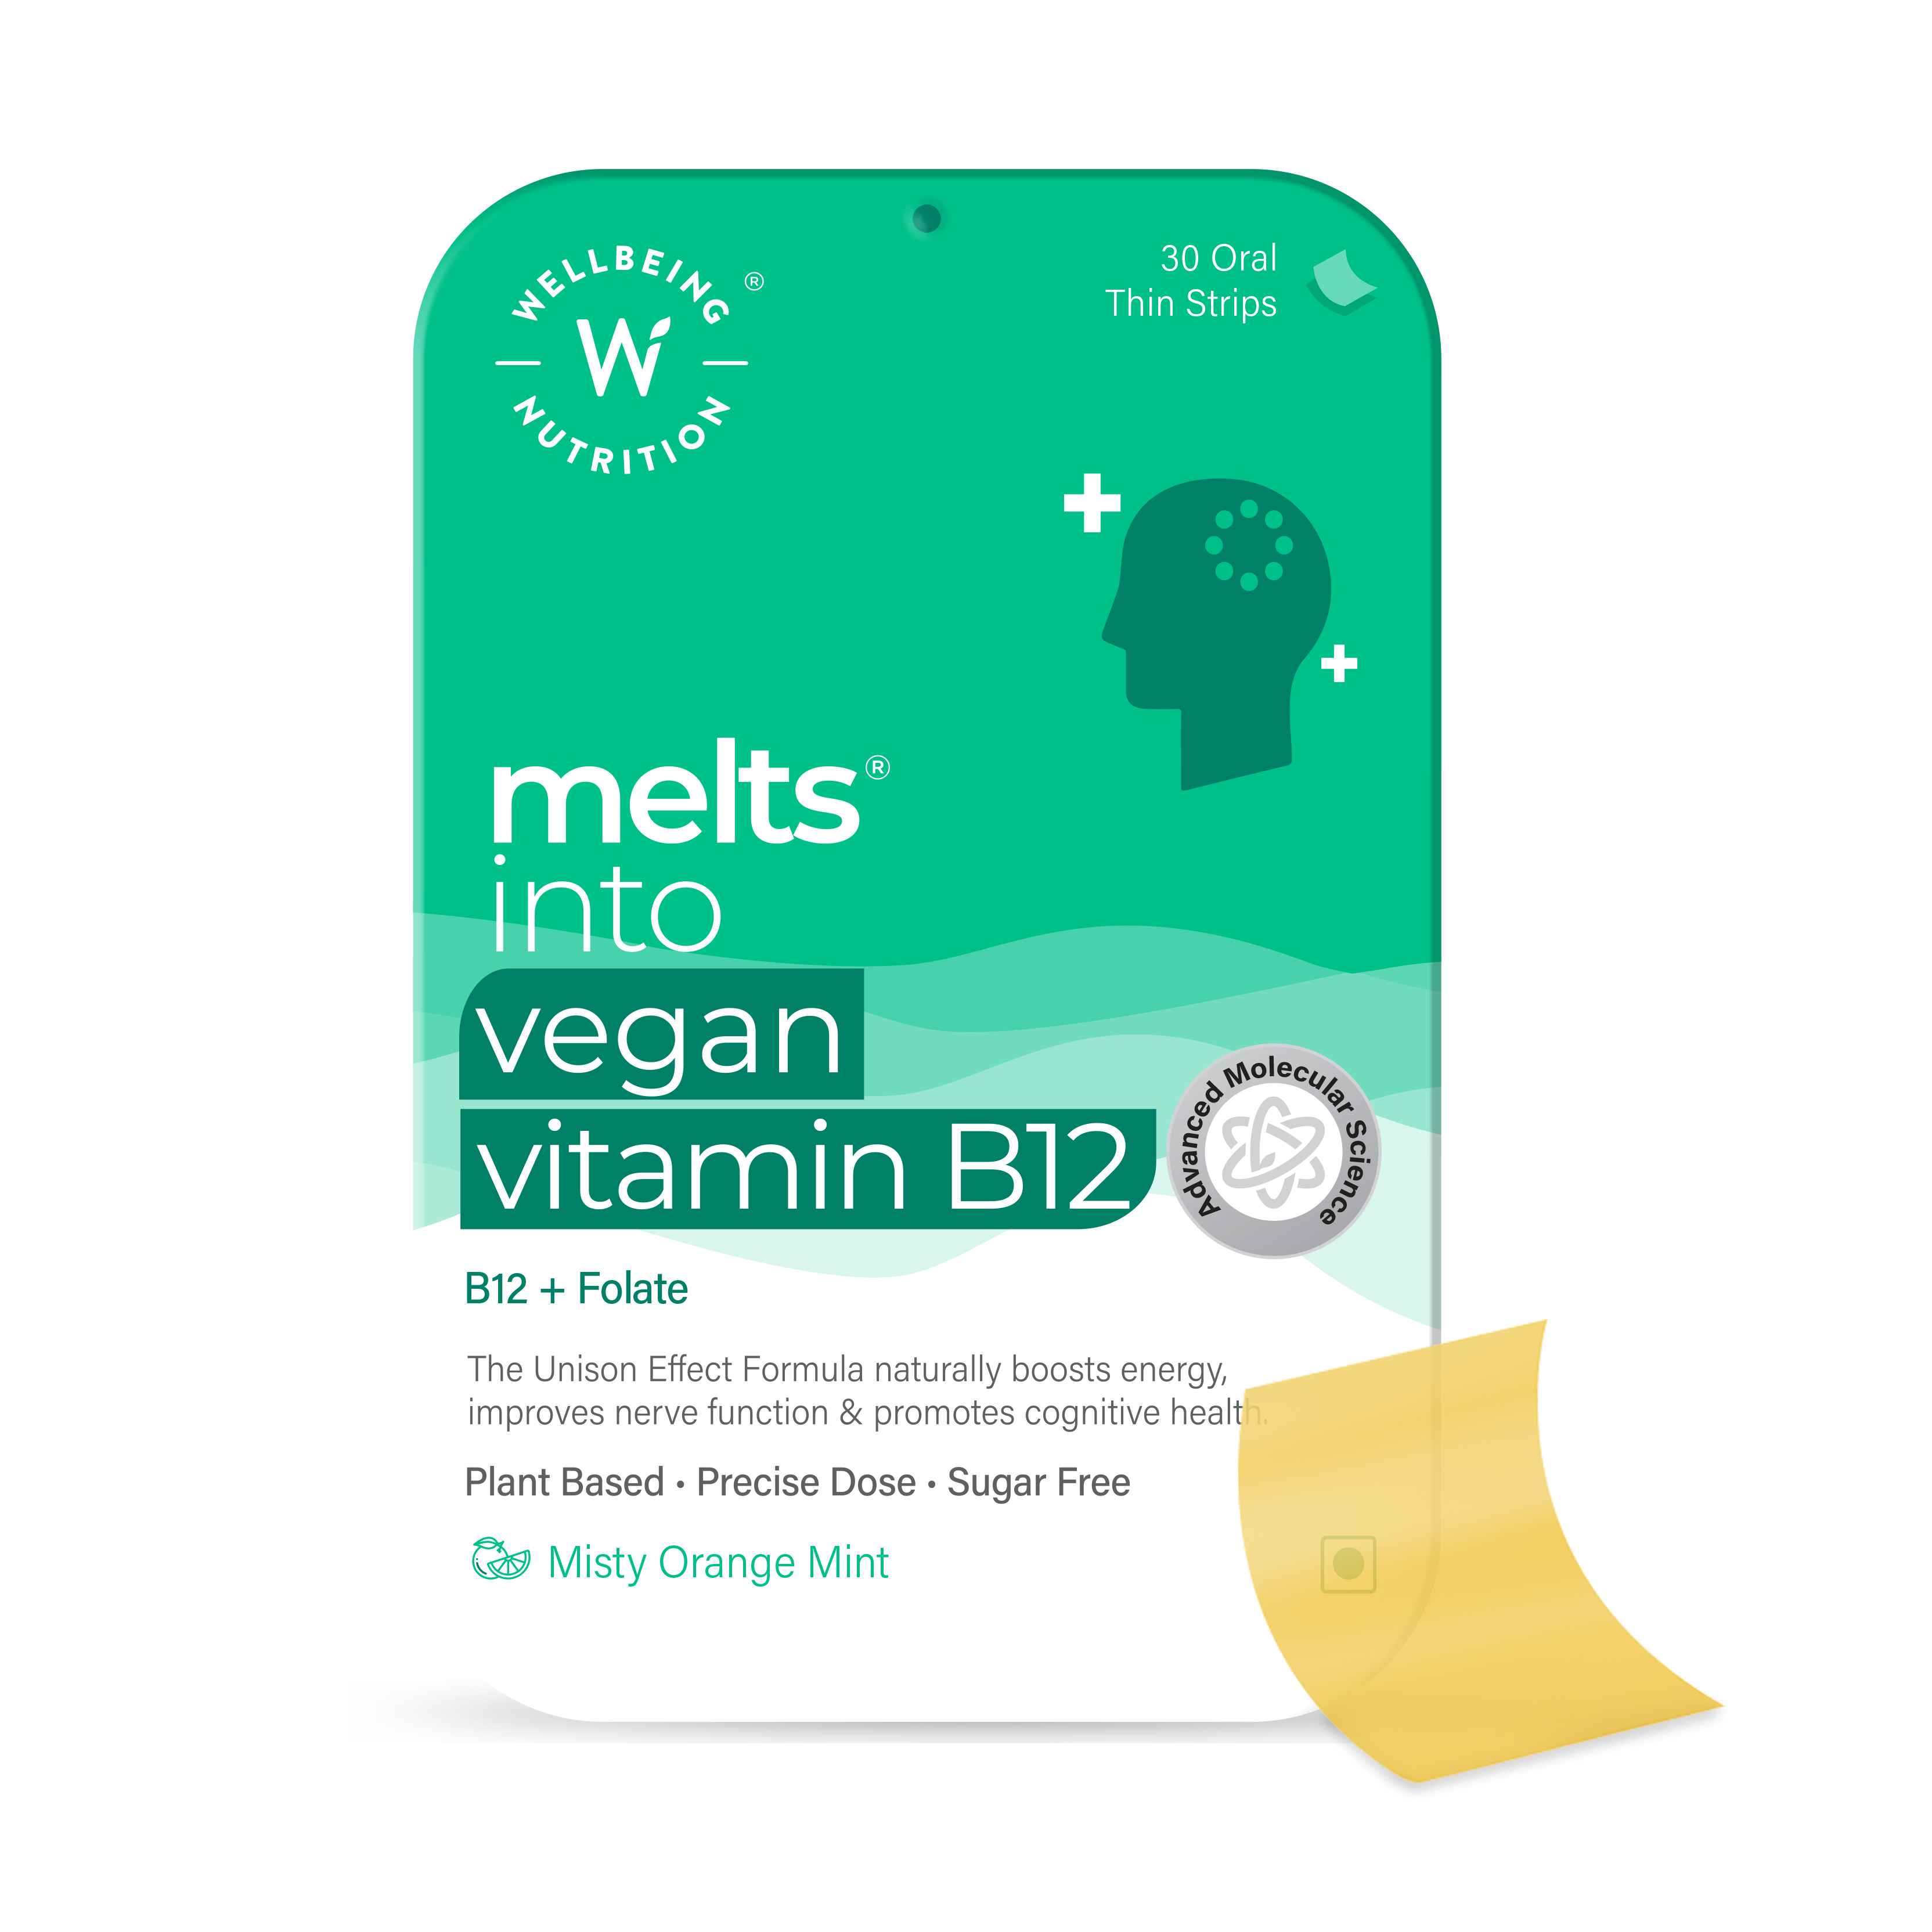 Vegan Vitamin B12